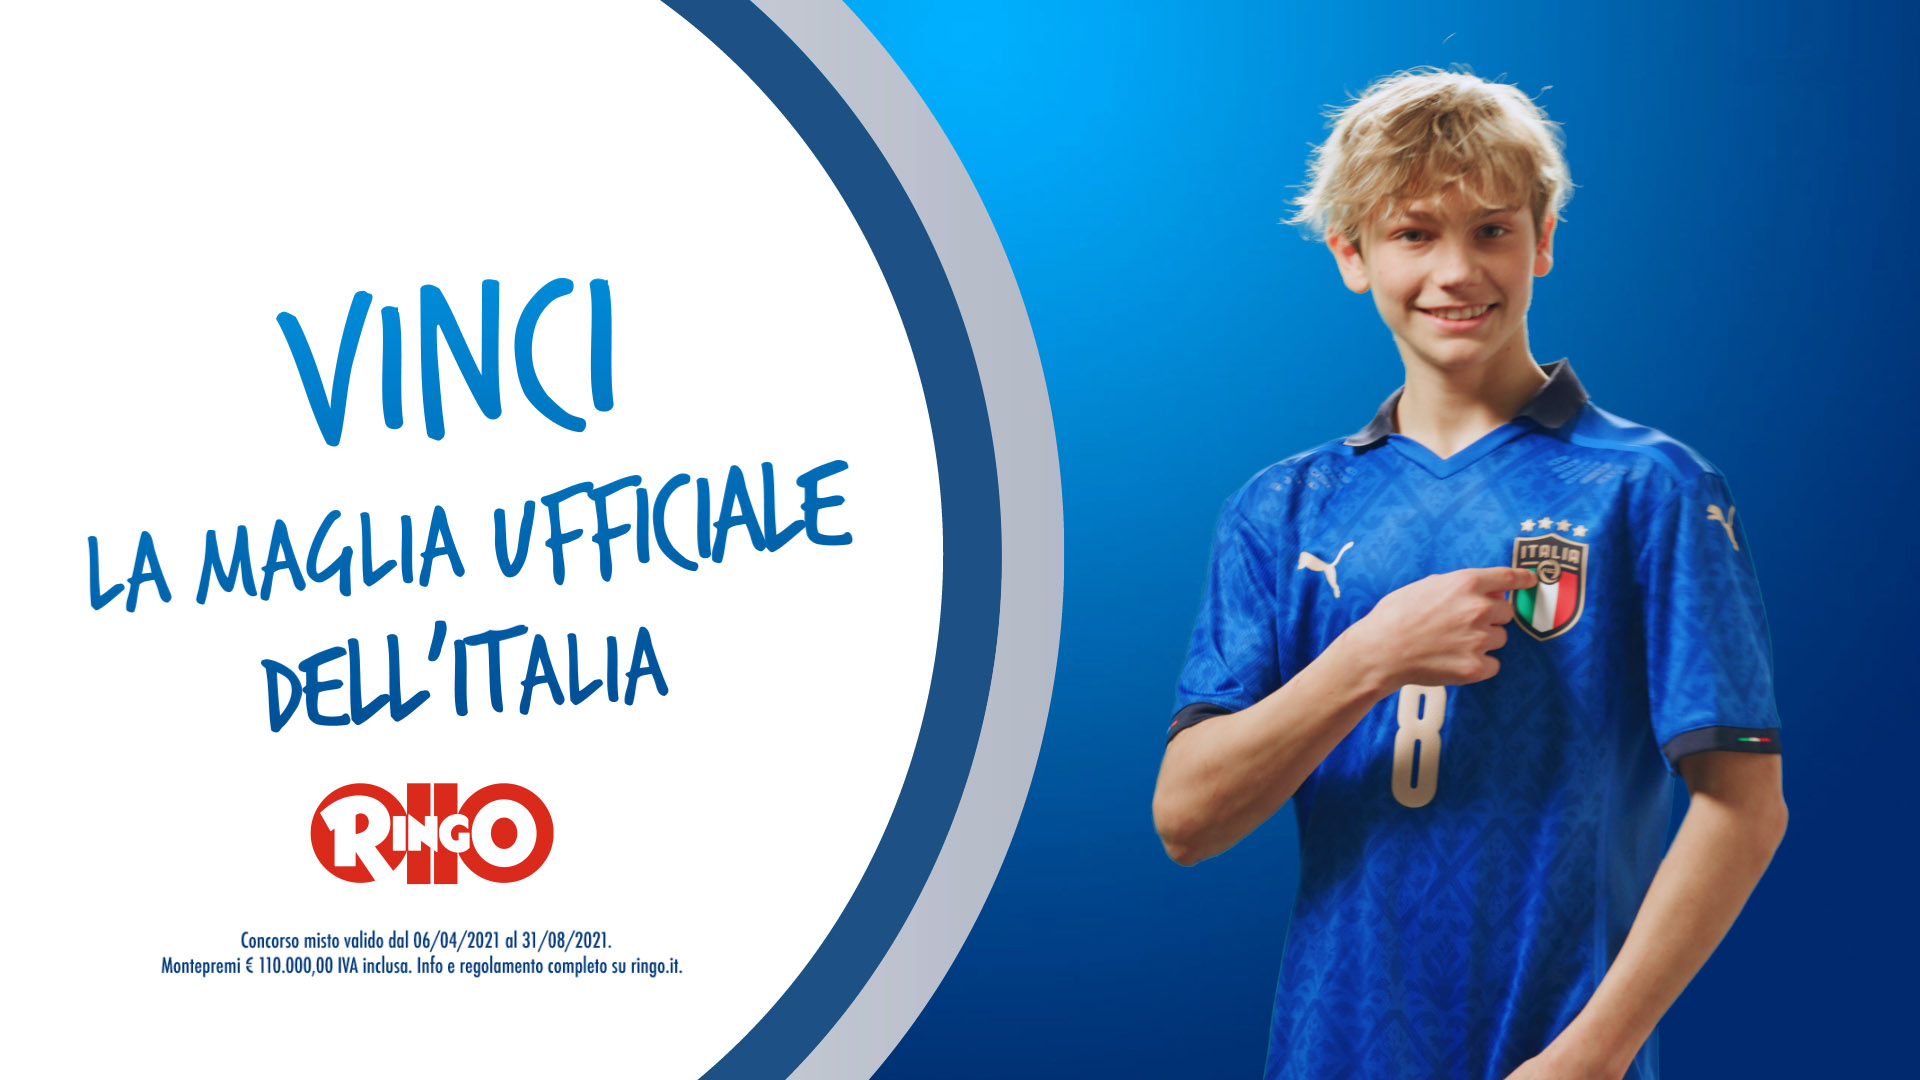 Ringo e FIGC lanciano una promozione per Euro 2020 con Nadler Larimer & Martinelli